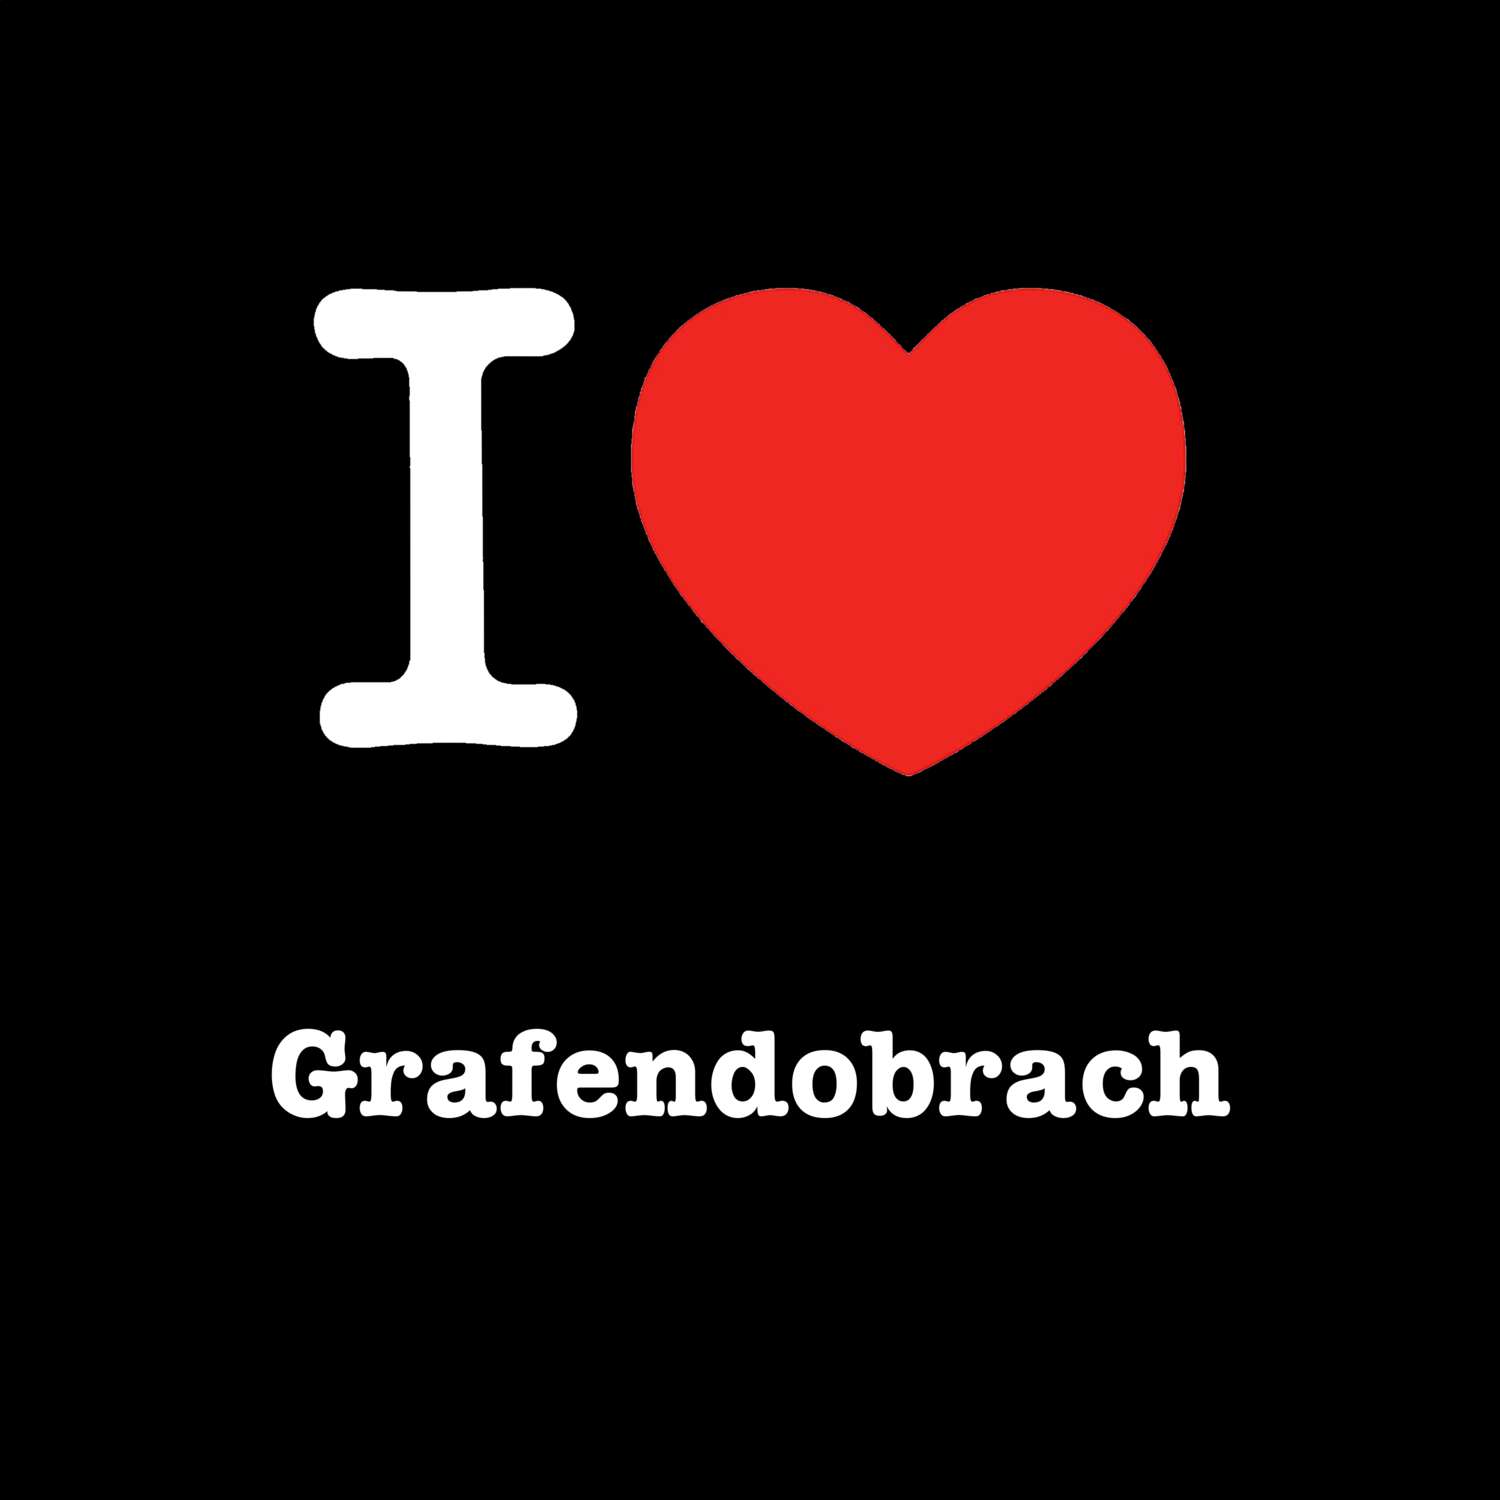 Grafendobrach T-Shirt »I love«